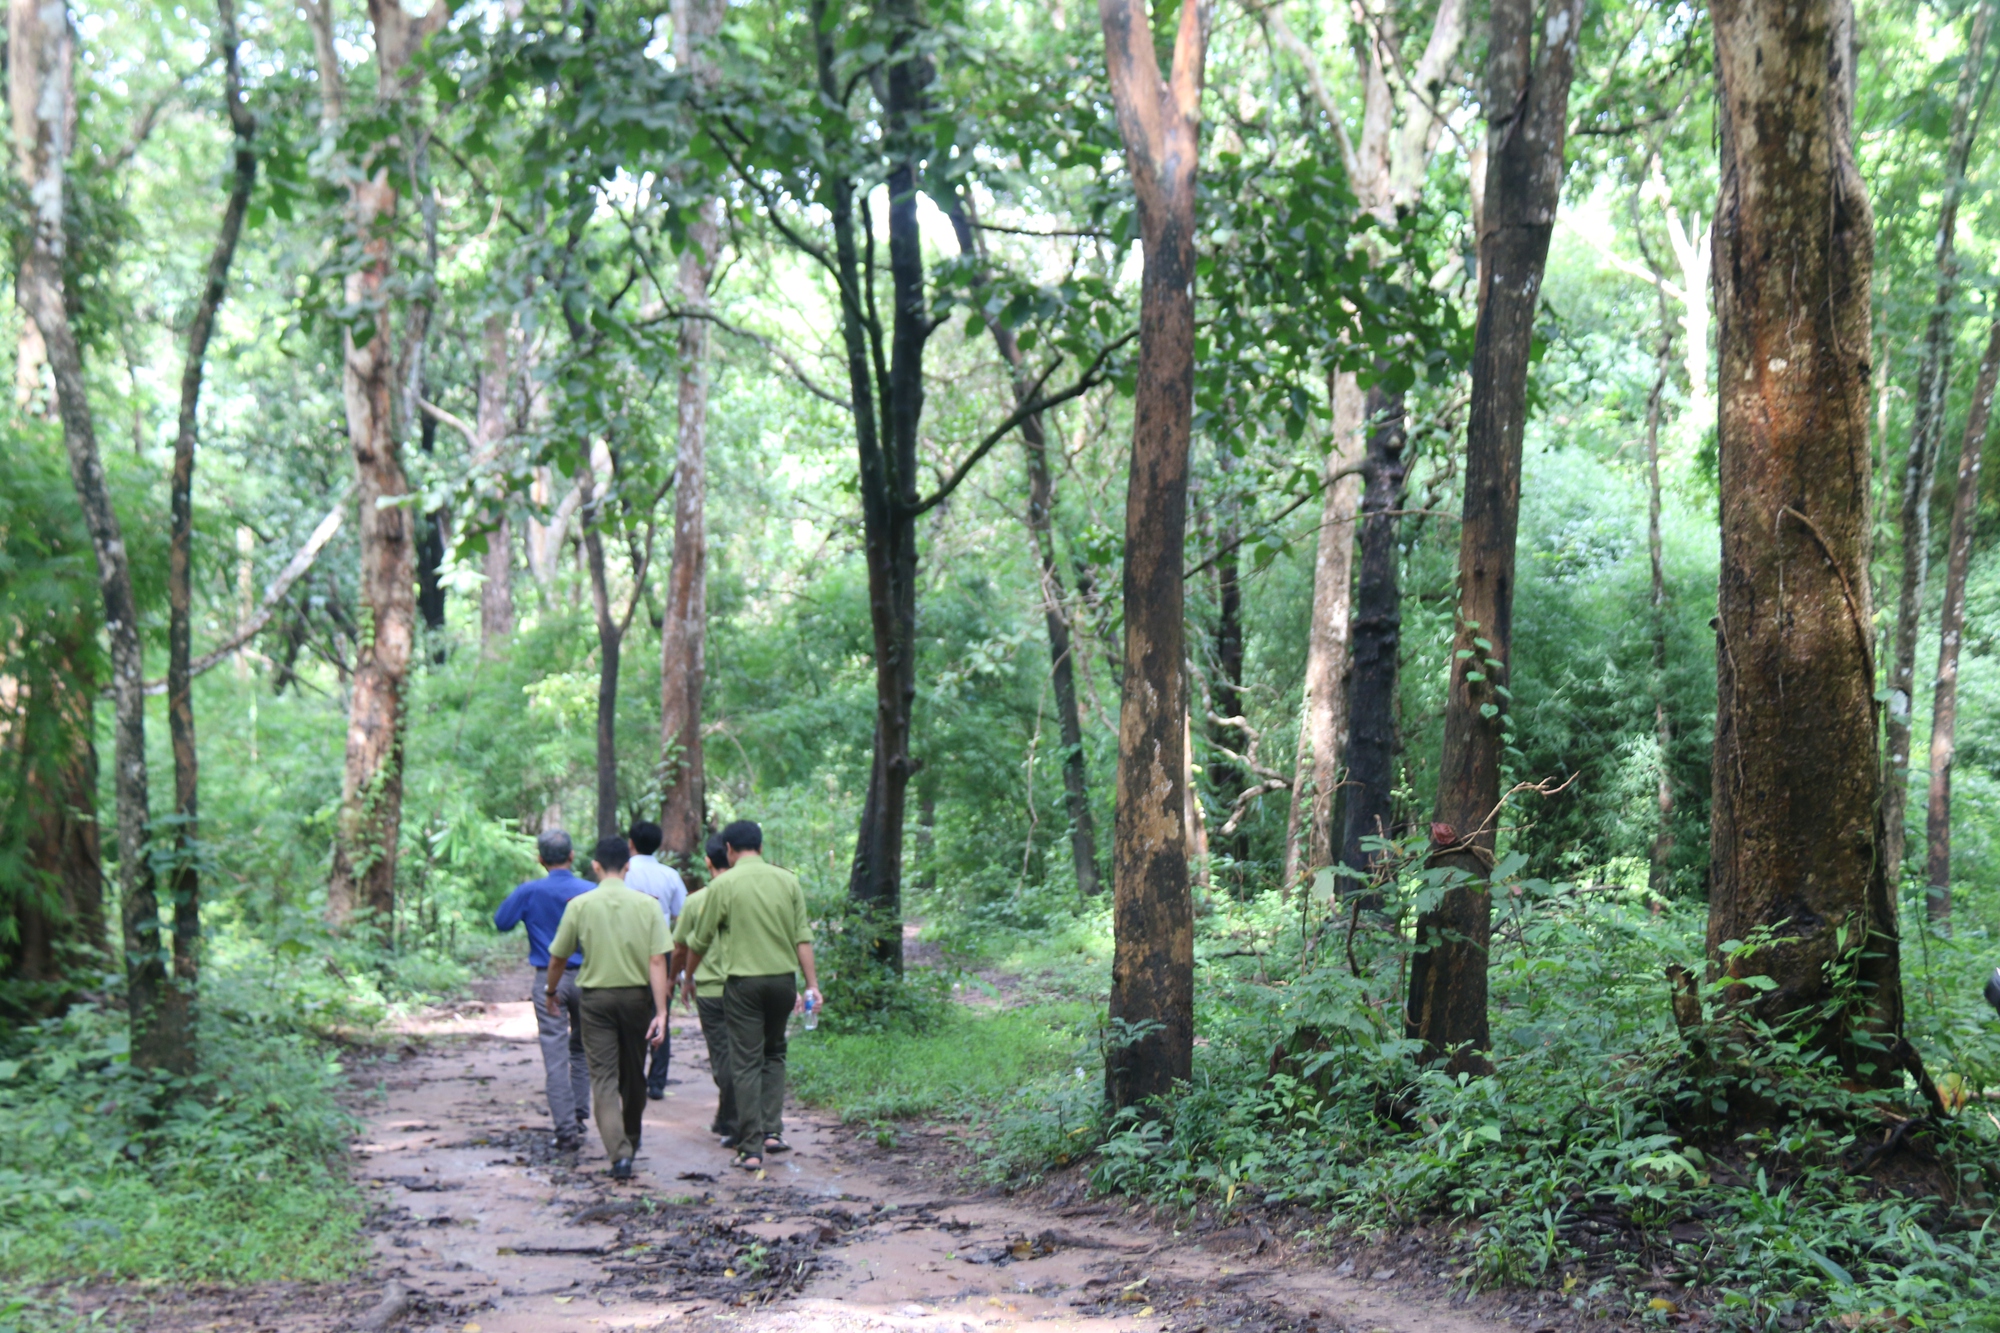 Bình Thuận đang họp báo về việc lấy hơn 600 ha rừng làm hồ chứa nước Ka Pét - Ảnh 5.